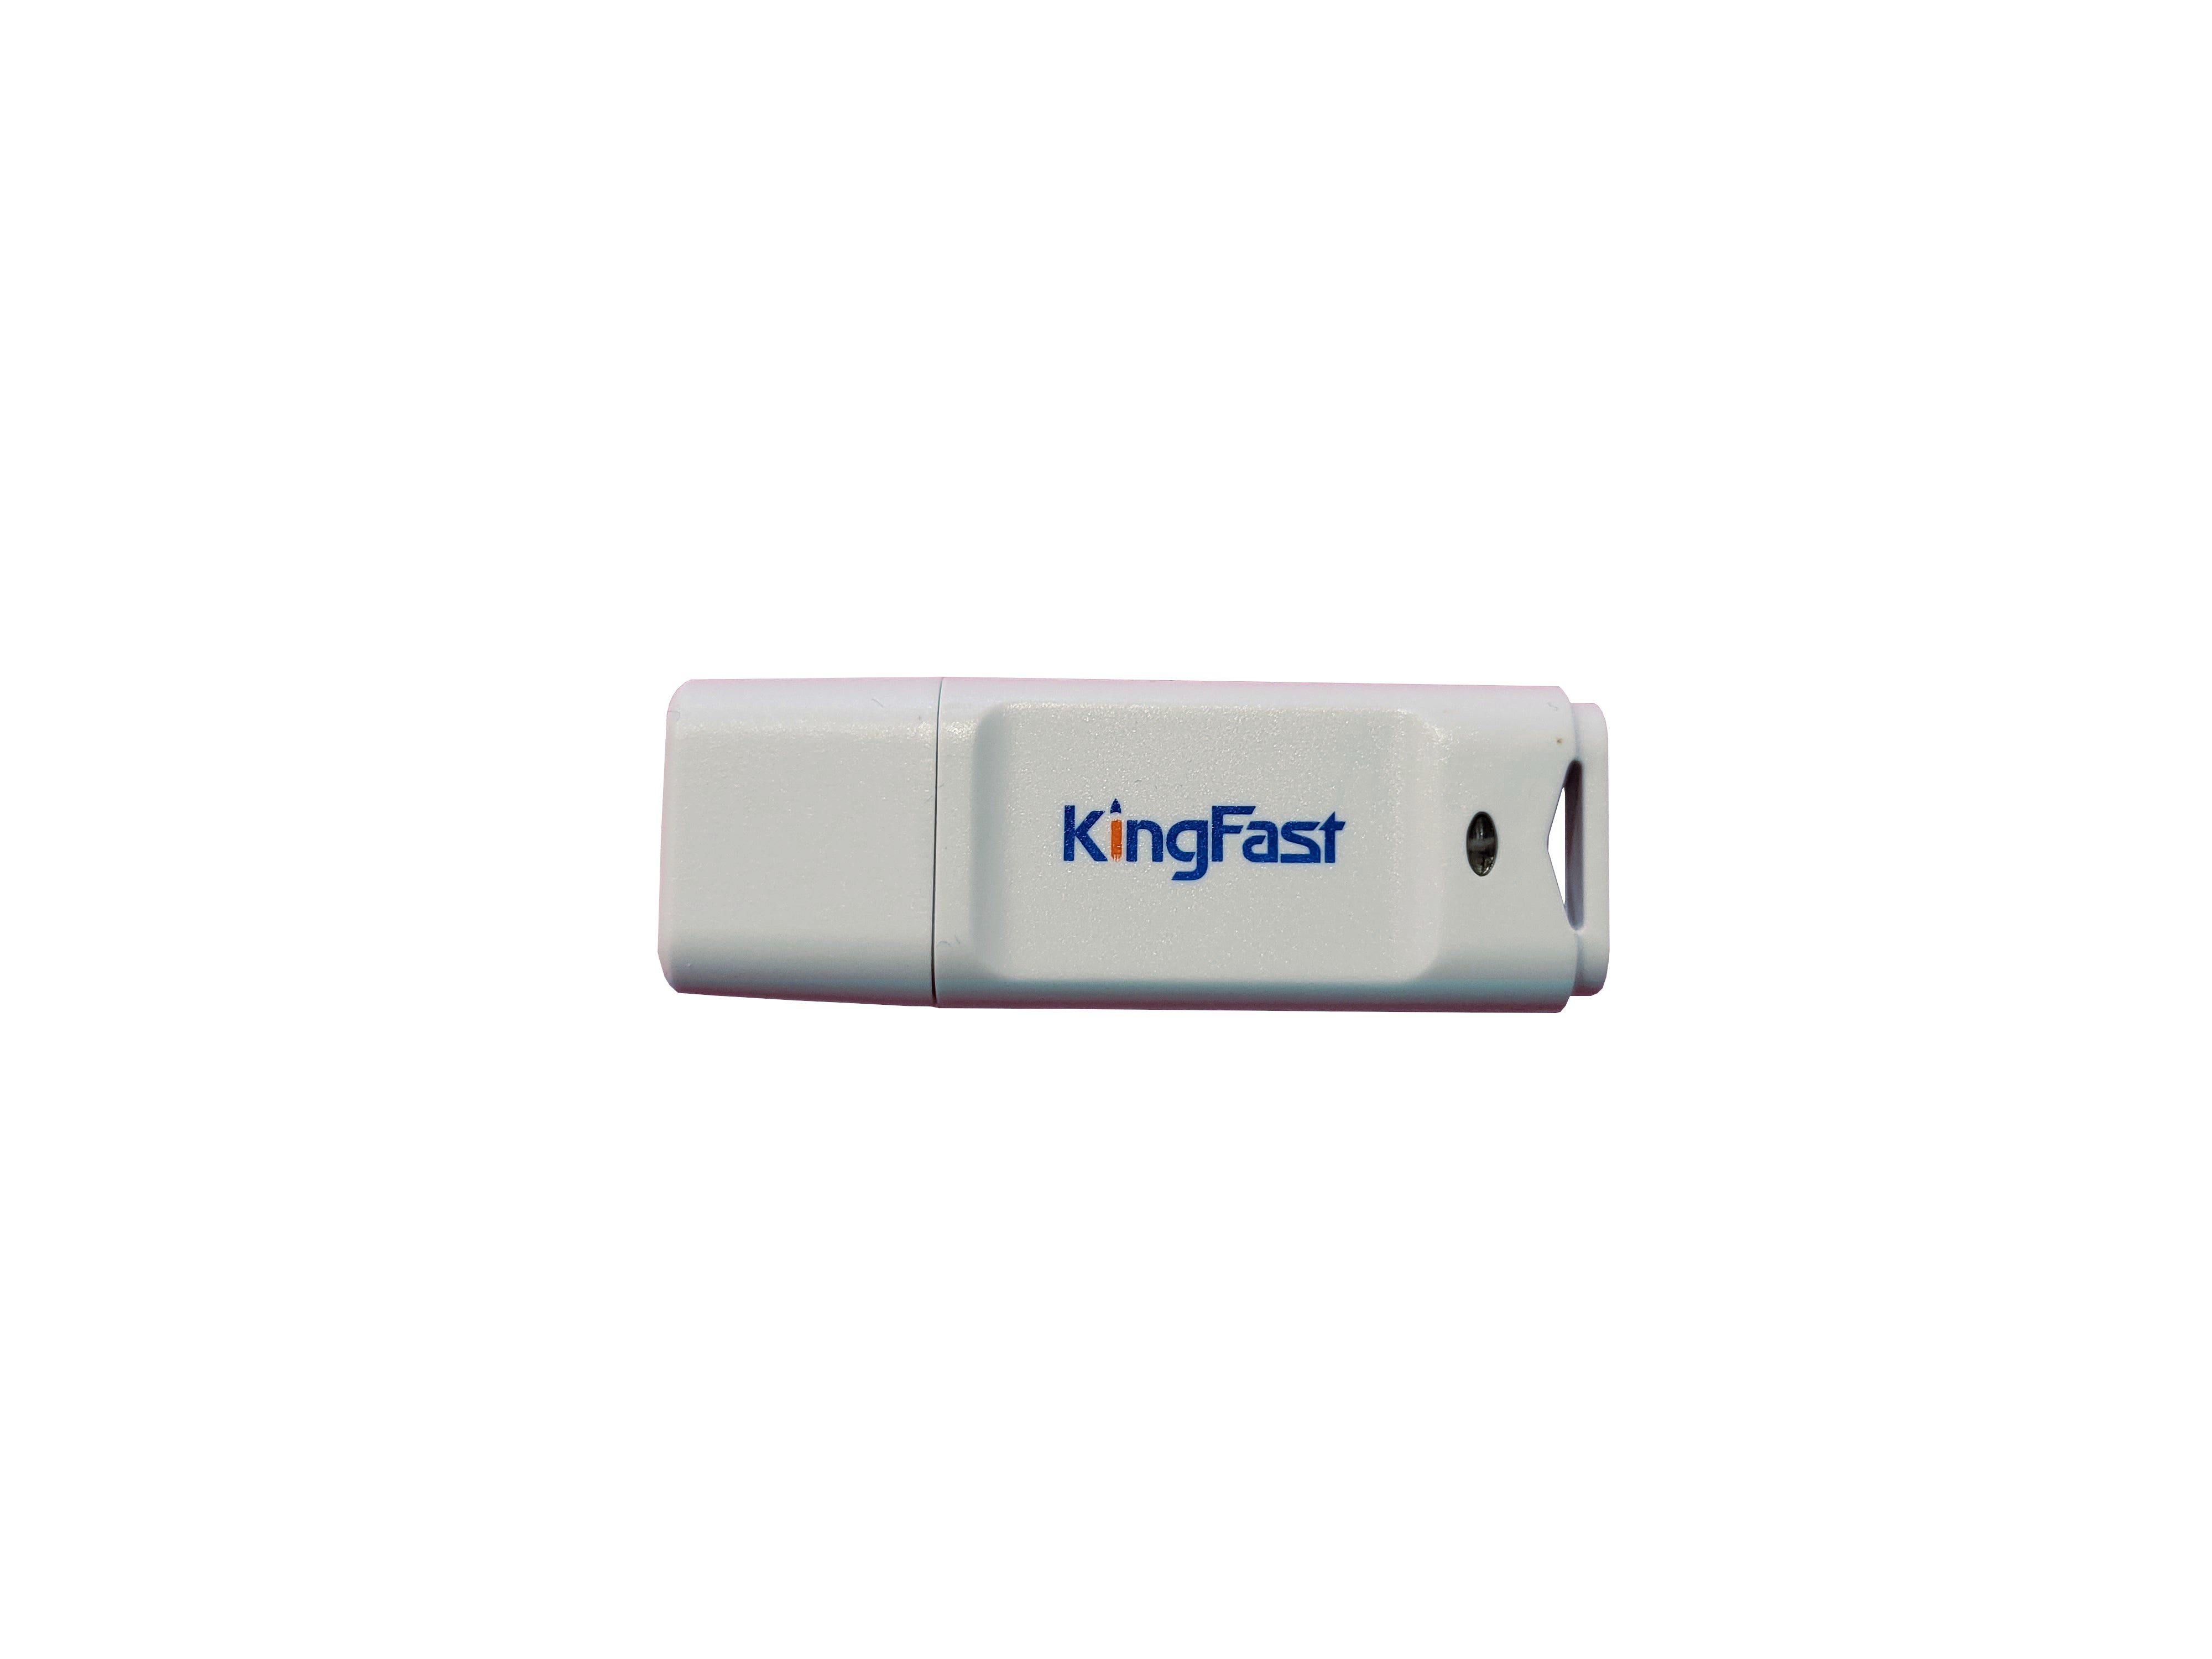 Kingfast Kingfast USB 3.0 flash Drive 64GB - New